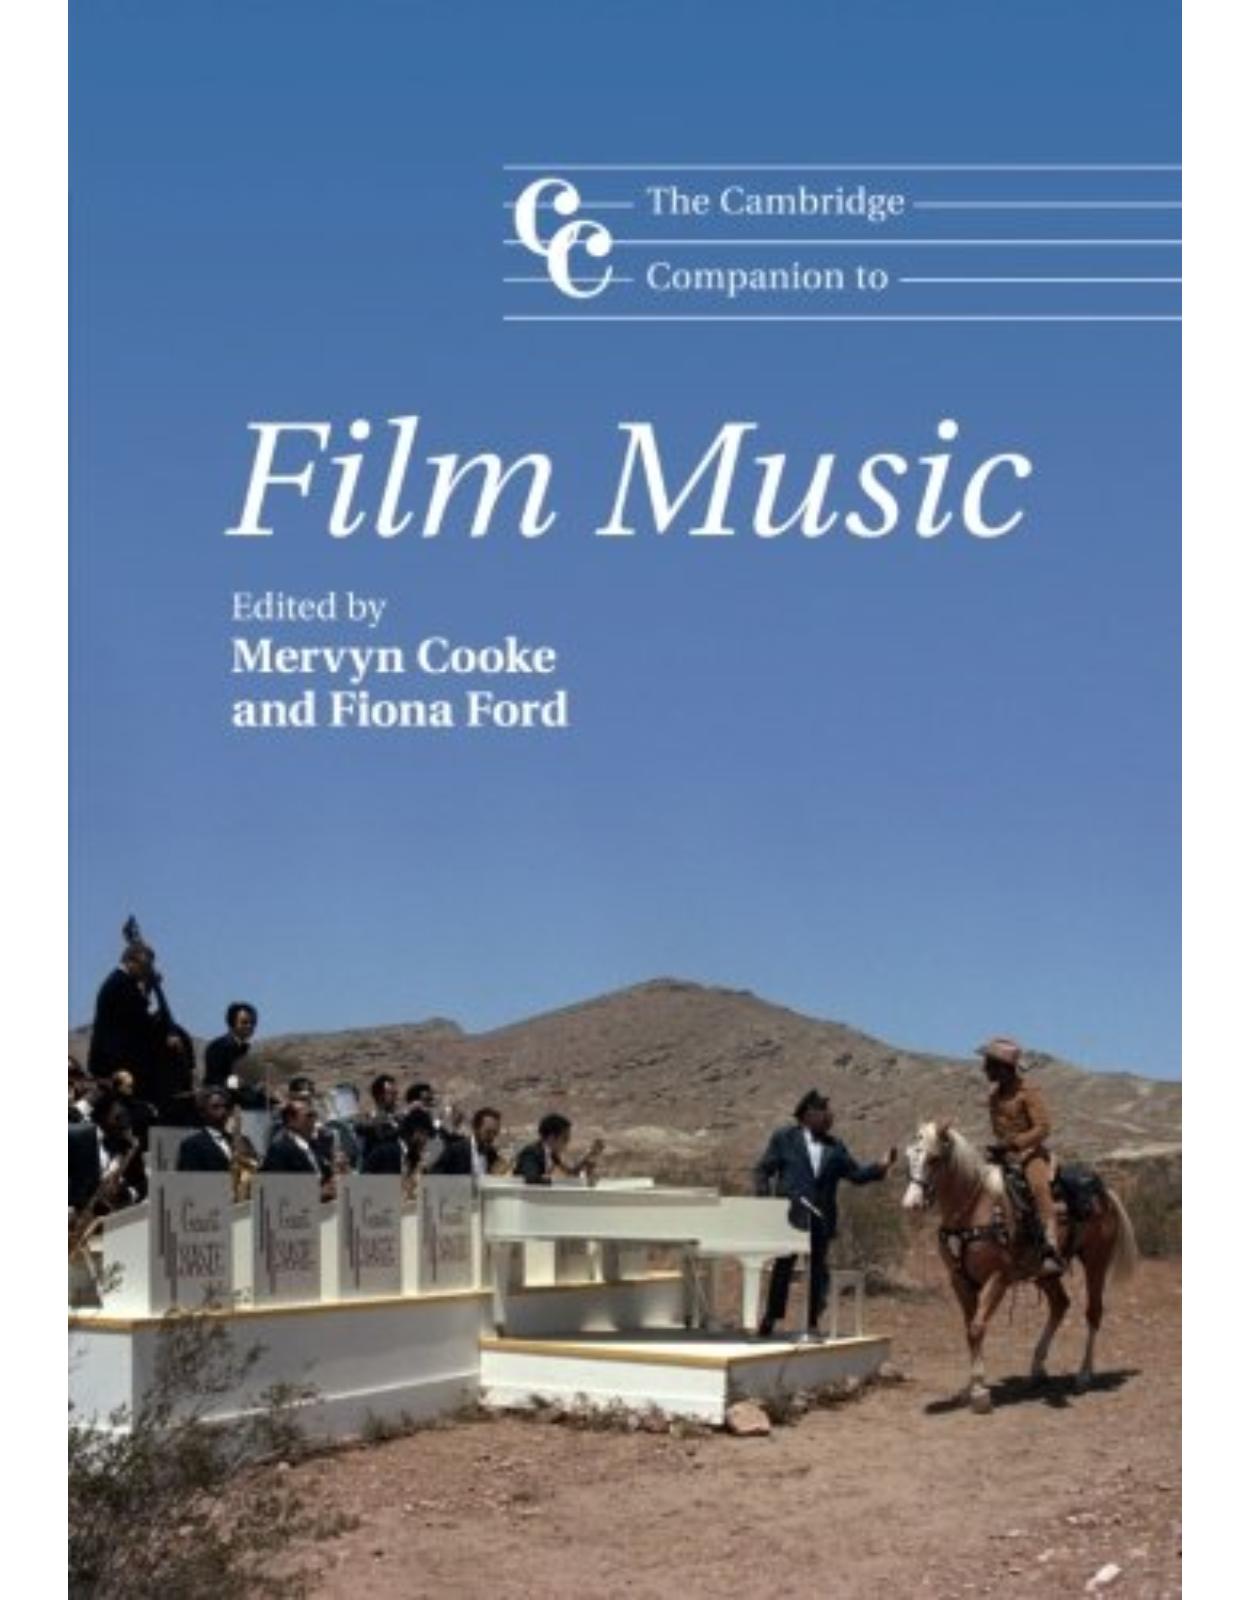 The Cambridge Companion to Film Music (Cambridge Companions to Music)